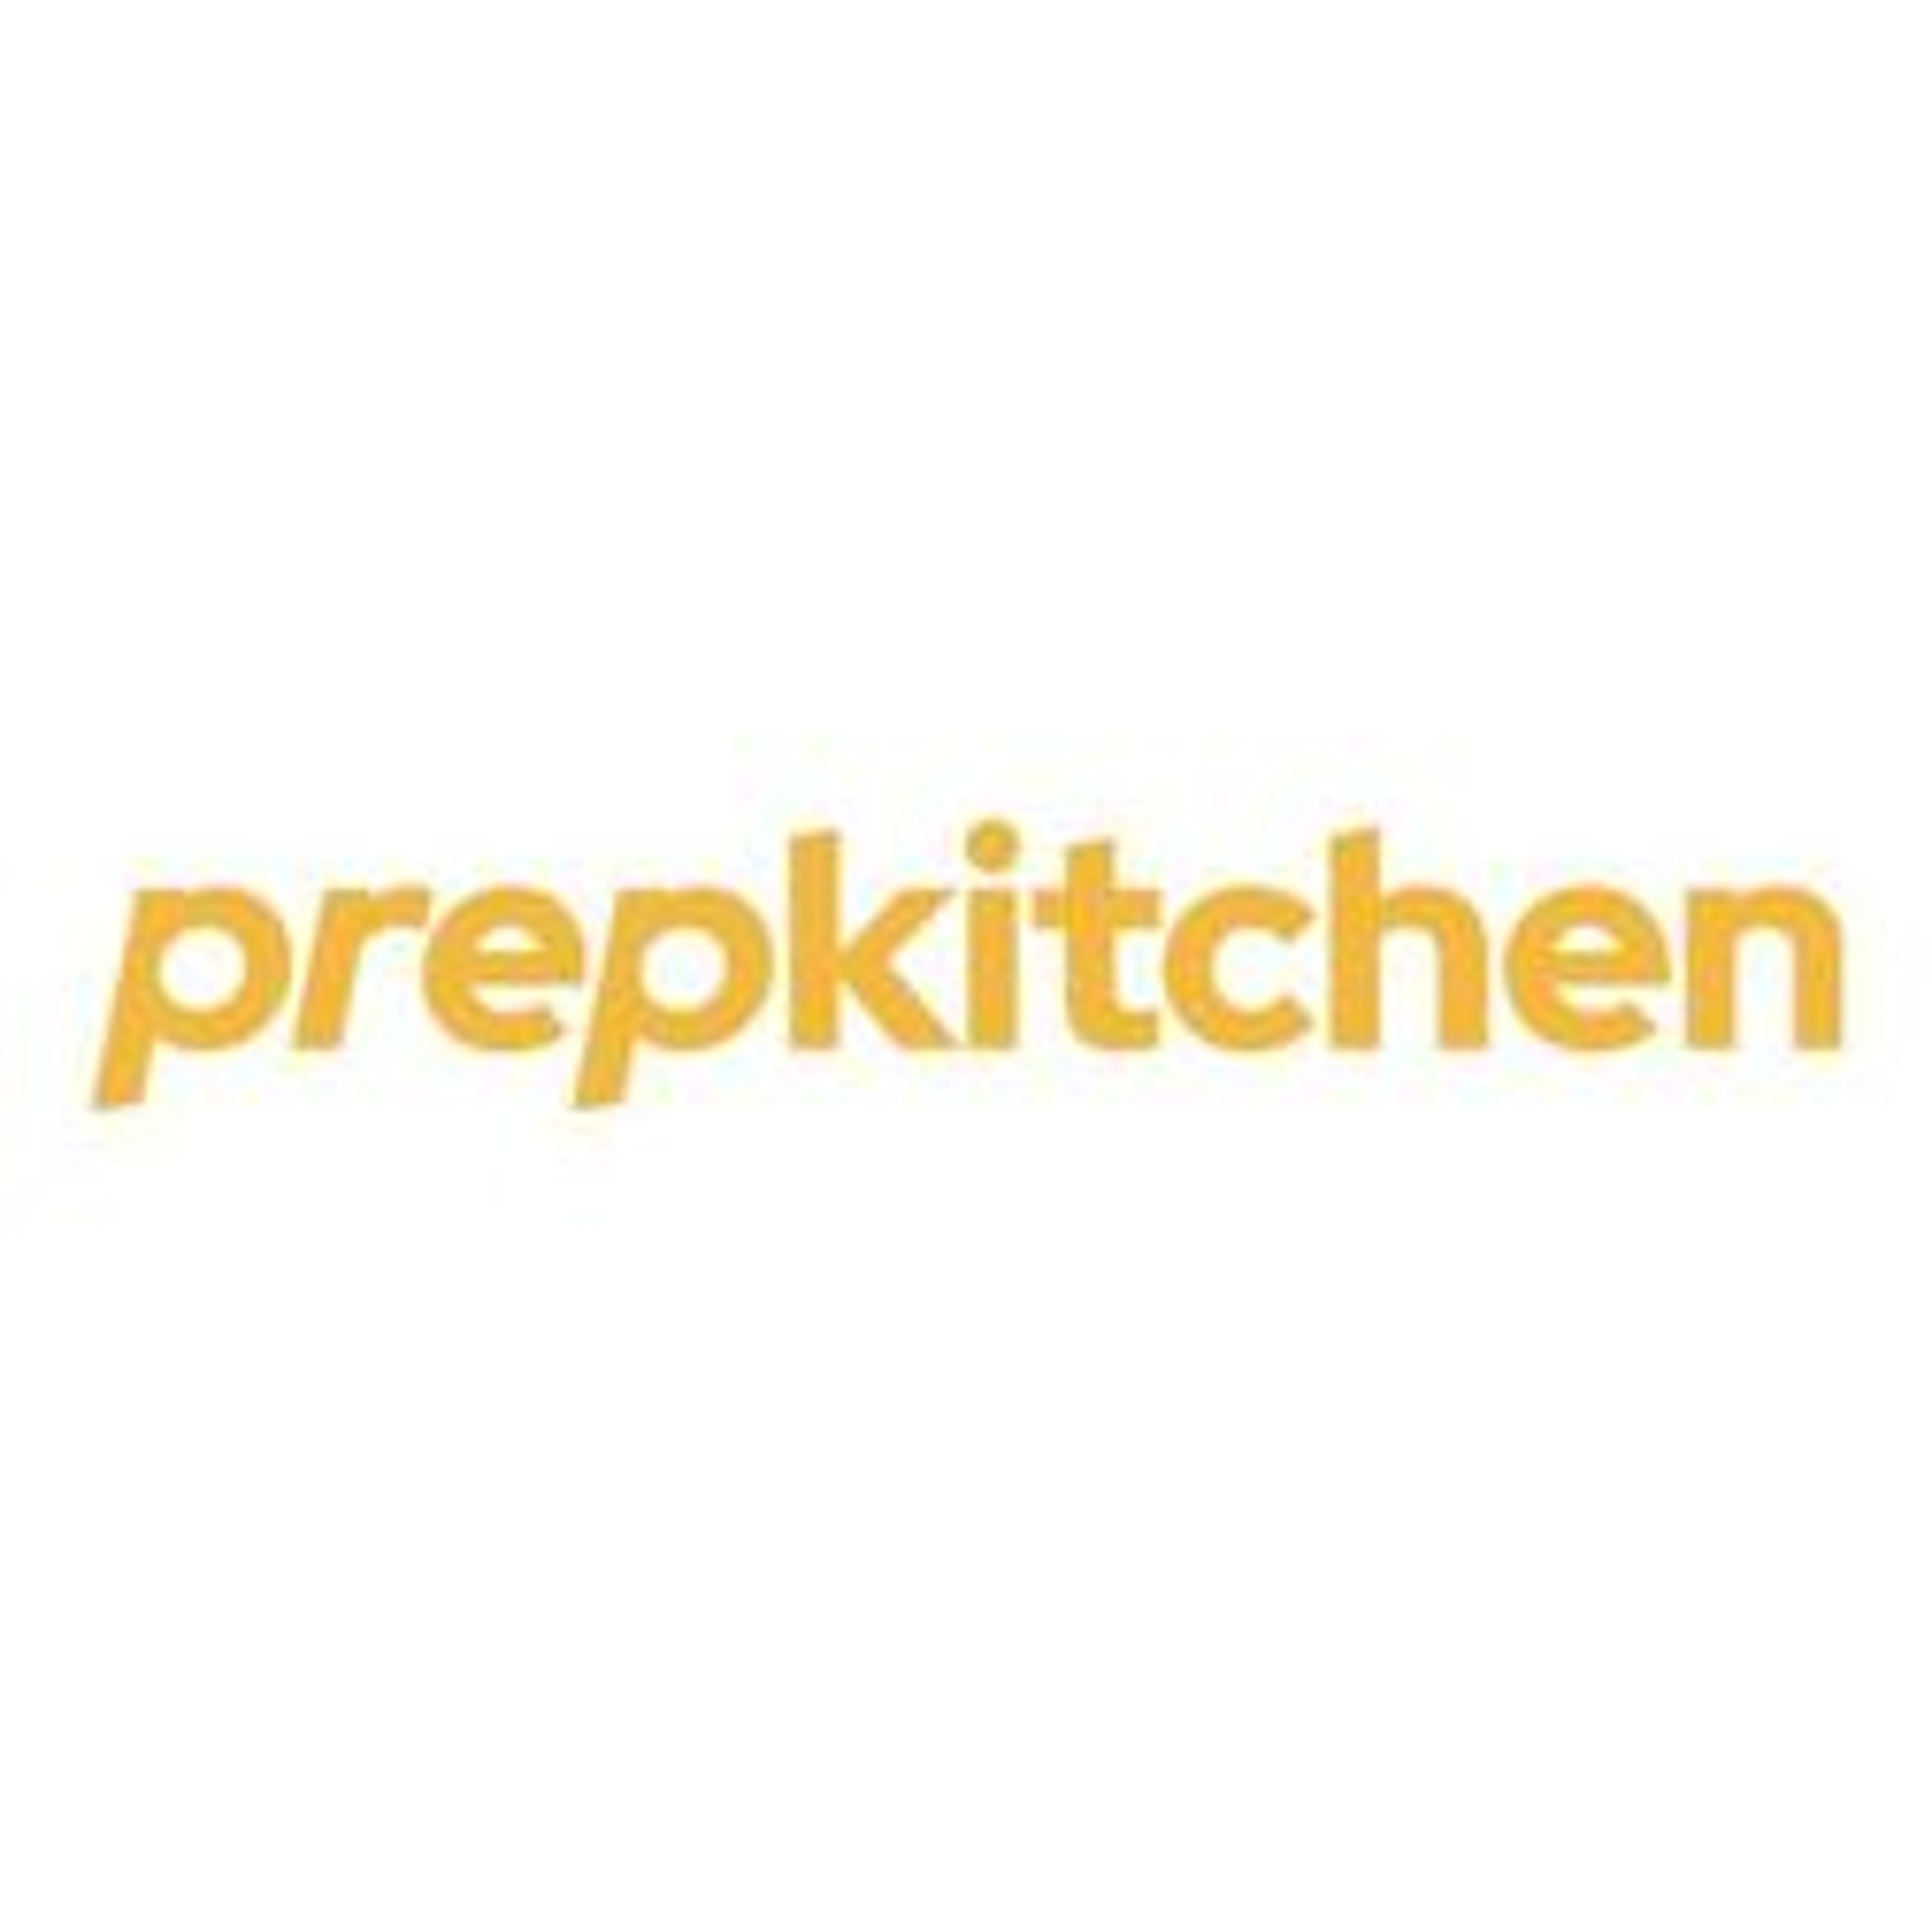  Prep Kitchen 